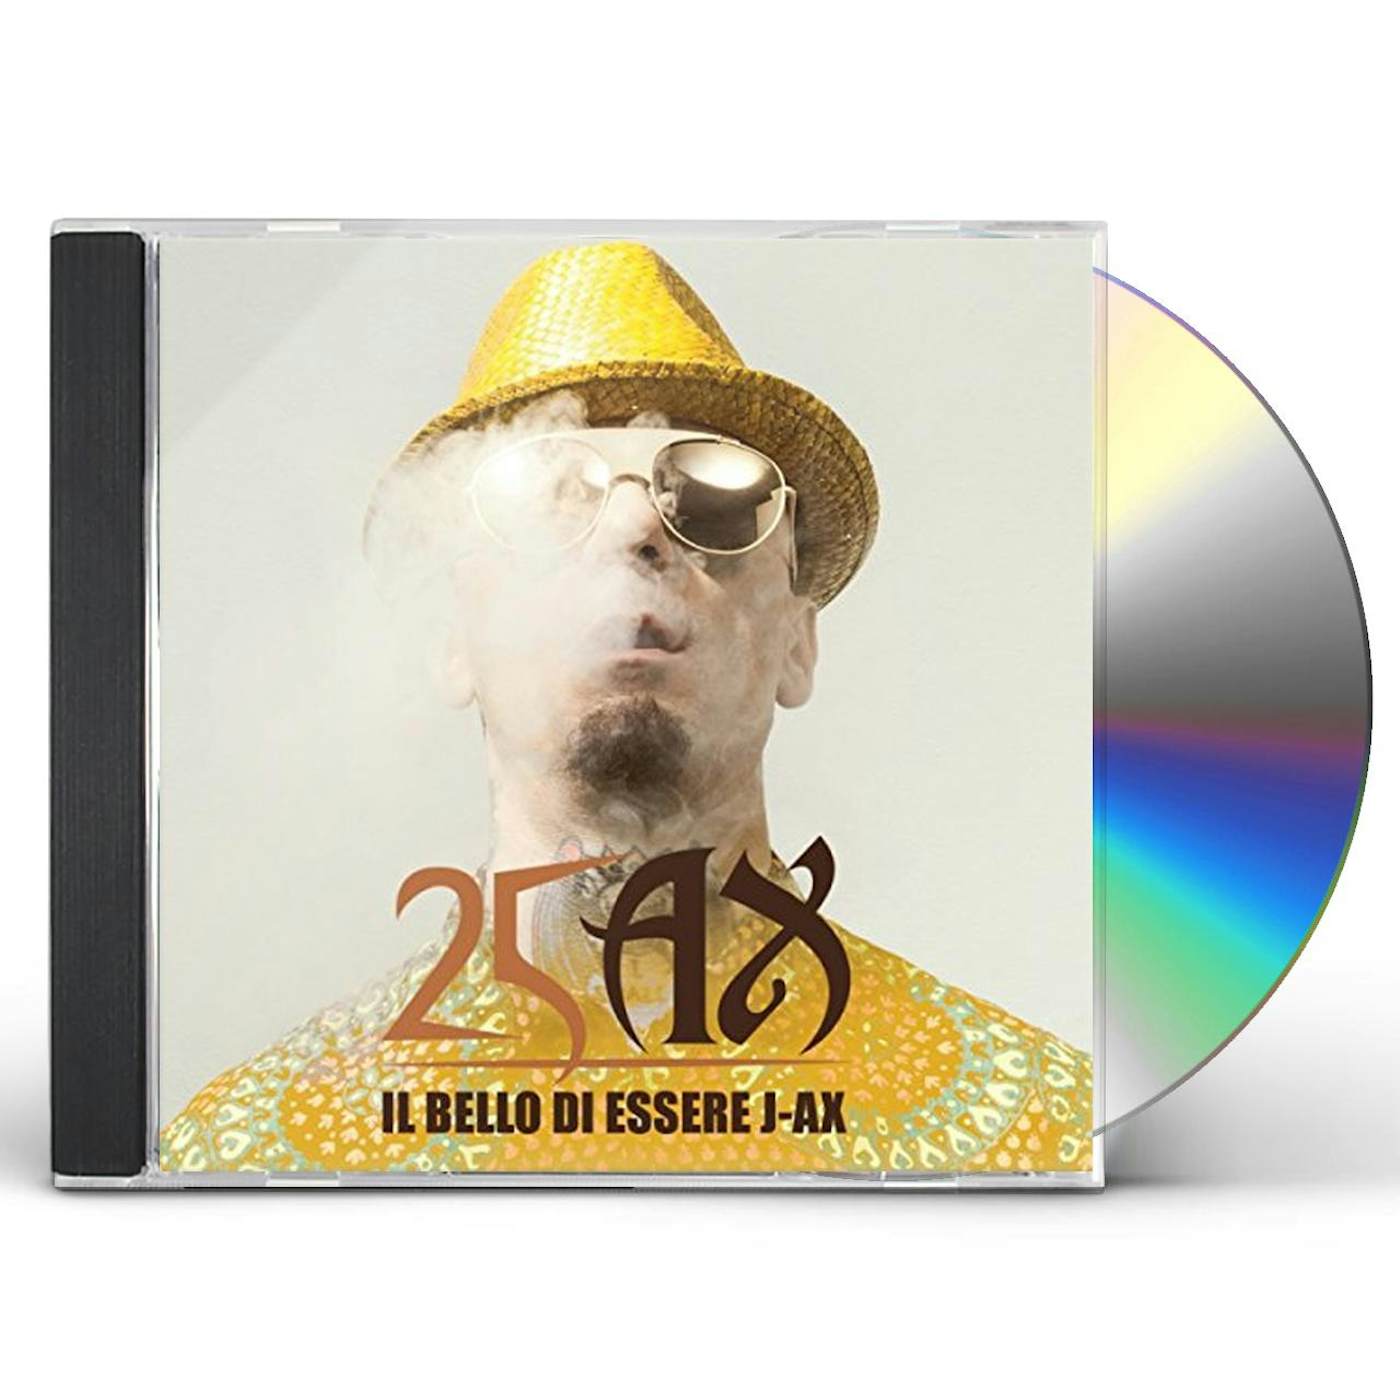 IL BELLO DI ESSERE J-AX: 25 ANNI DI SUCCESSI CD